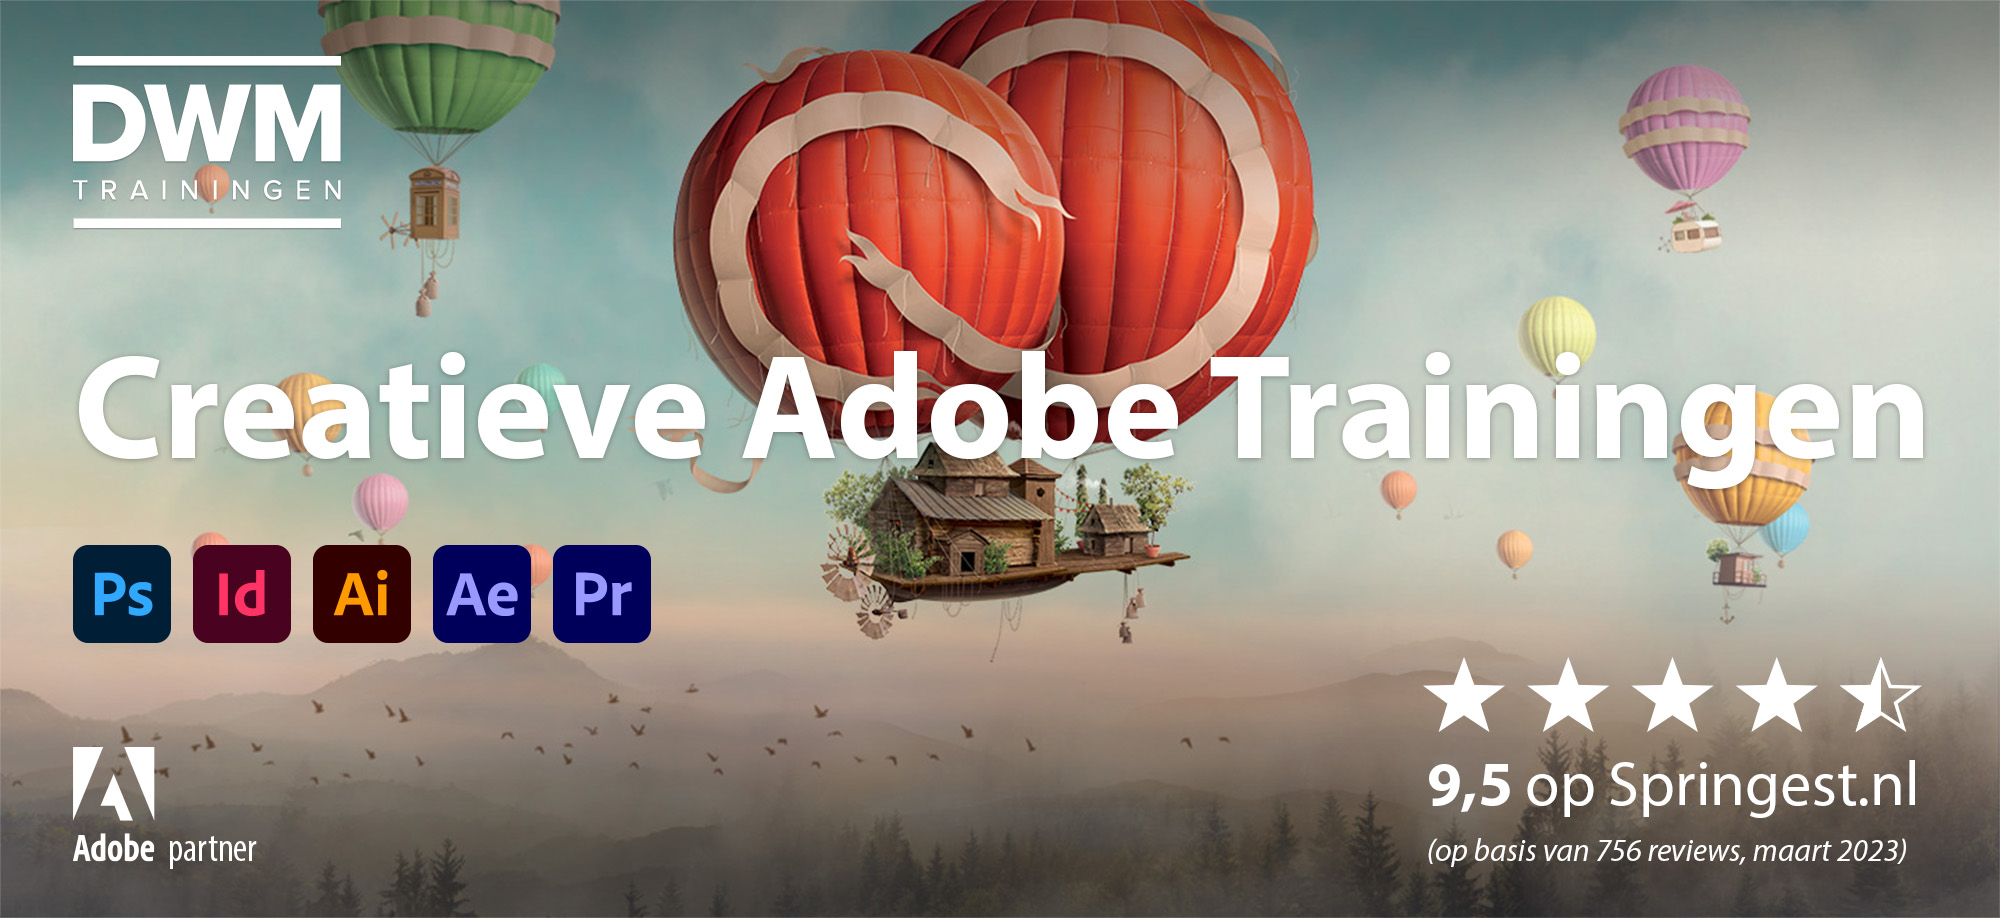 Creatieve Adobe trainingen, 9,5 op basis van 756 reviews in maart 2023 op Springest